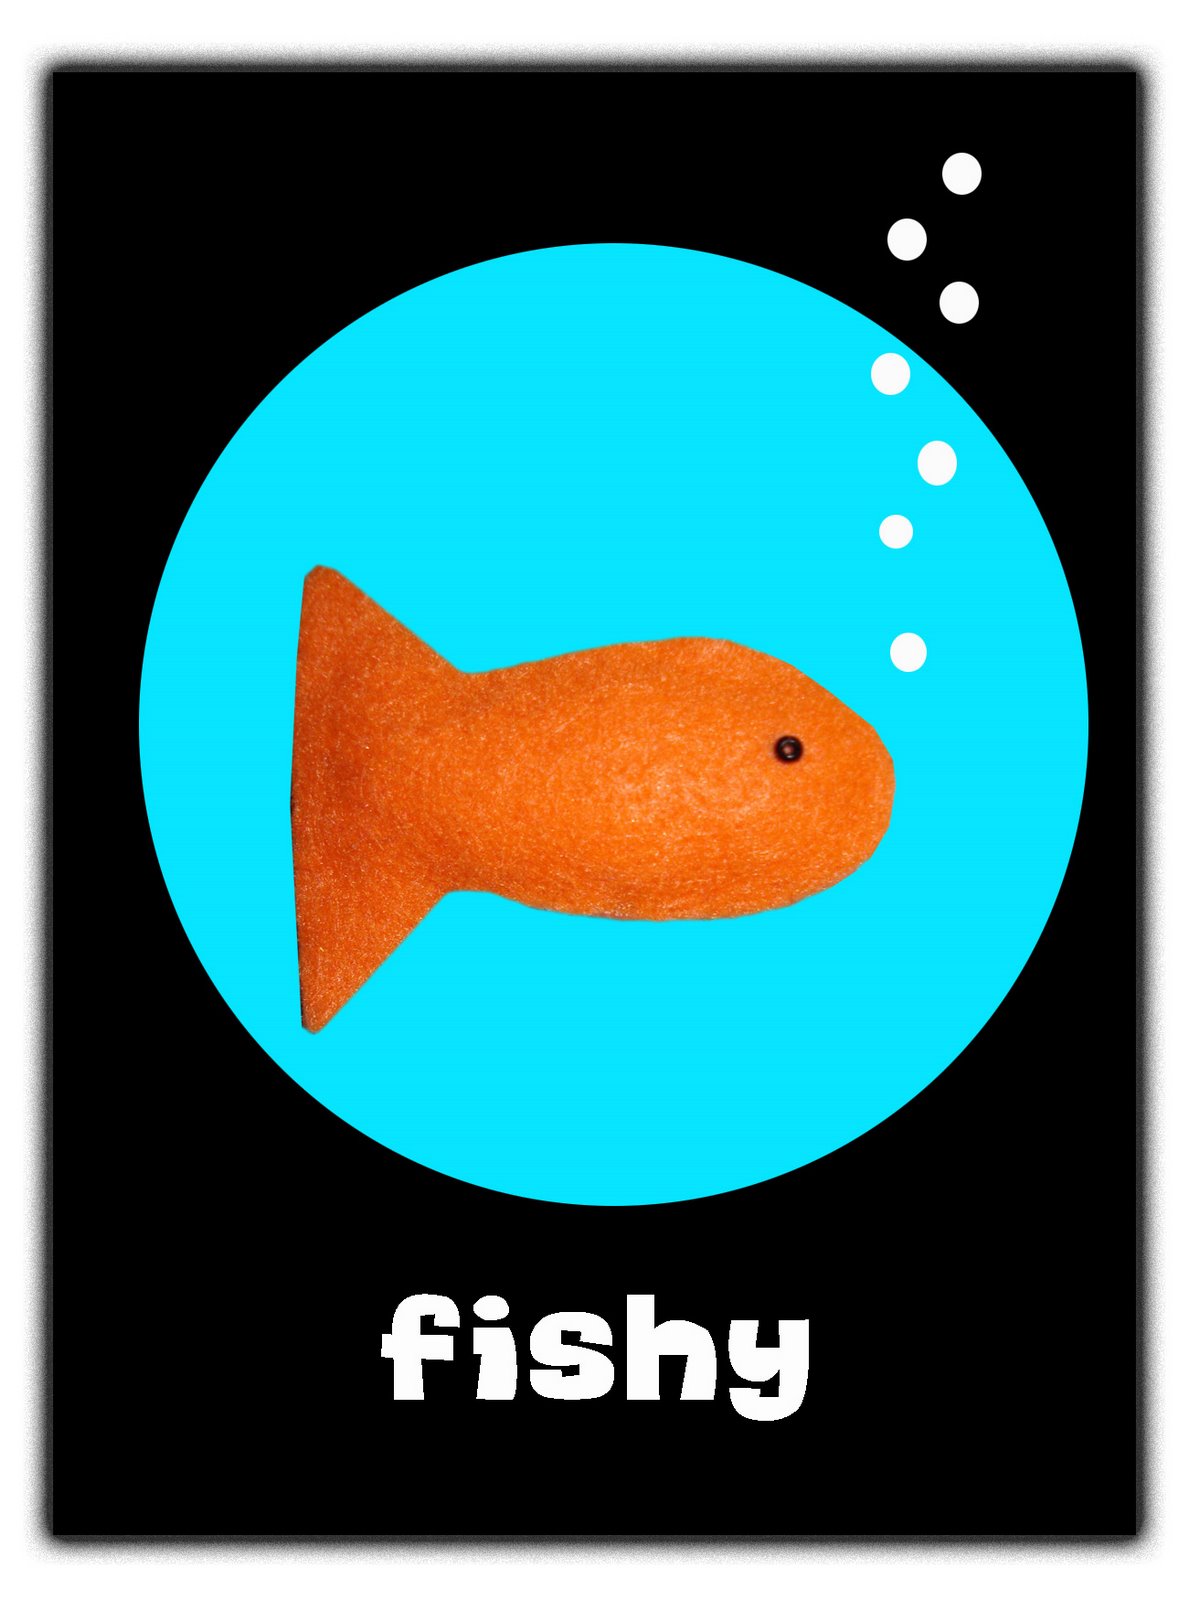 [fishey.jpg]